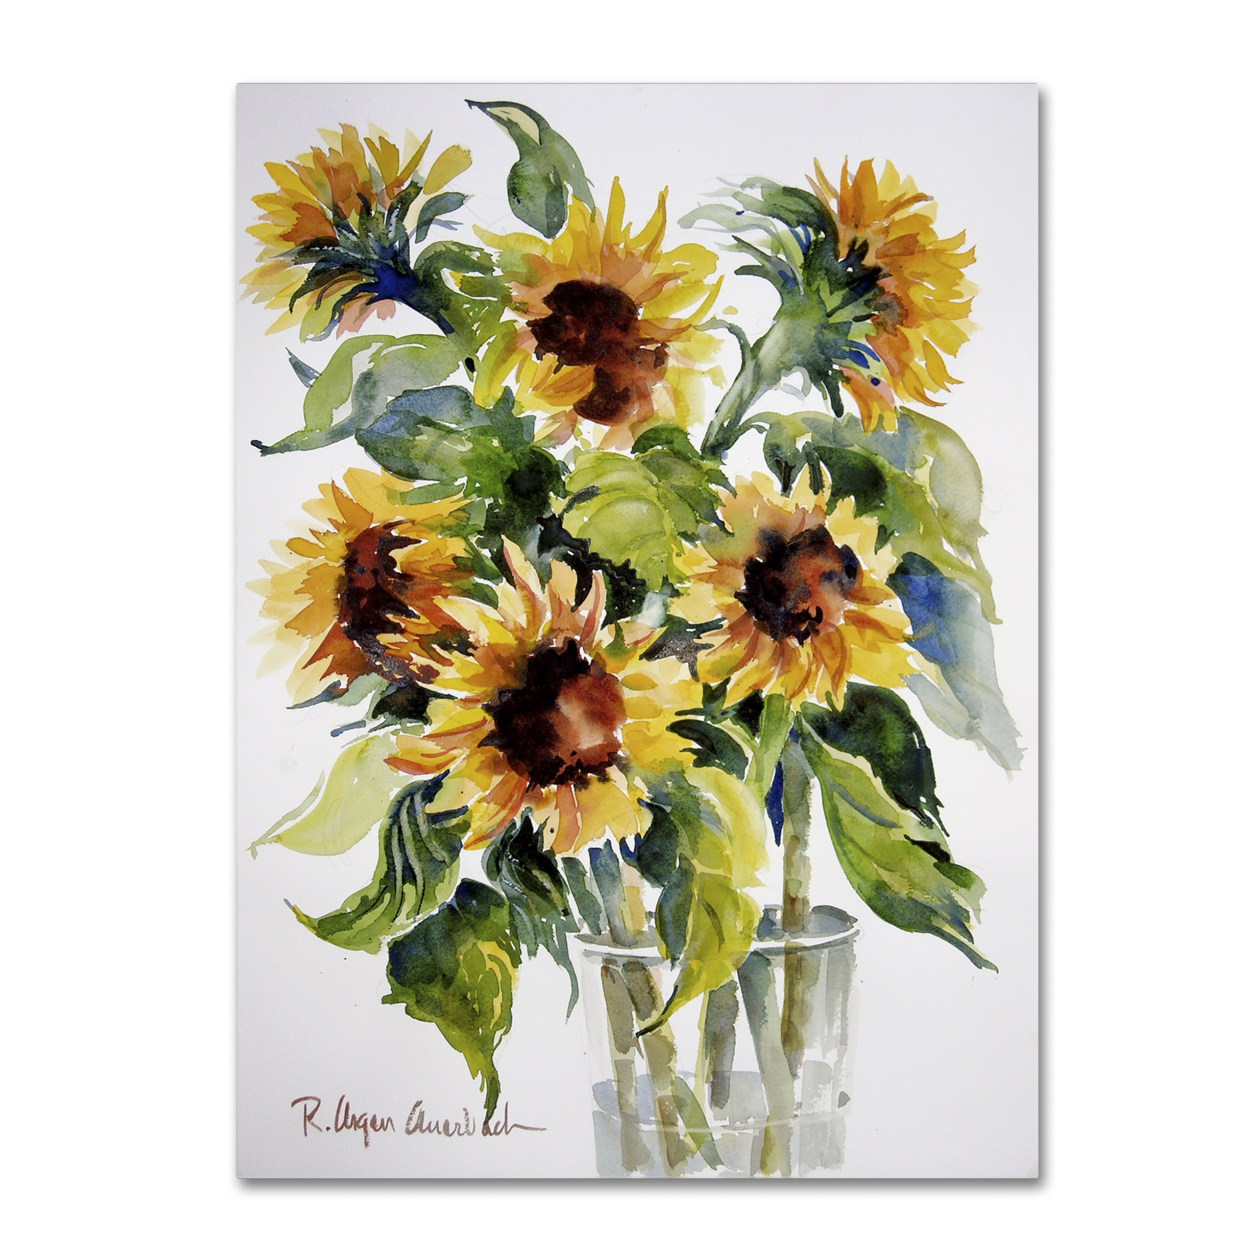 Rita Auerbach 'Sunflowers' Canvas Wall Art 35 X 47 Inches